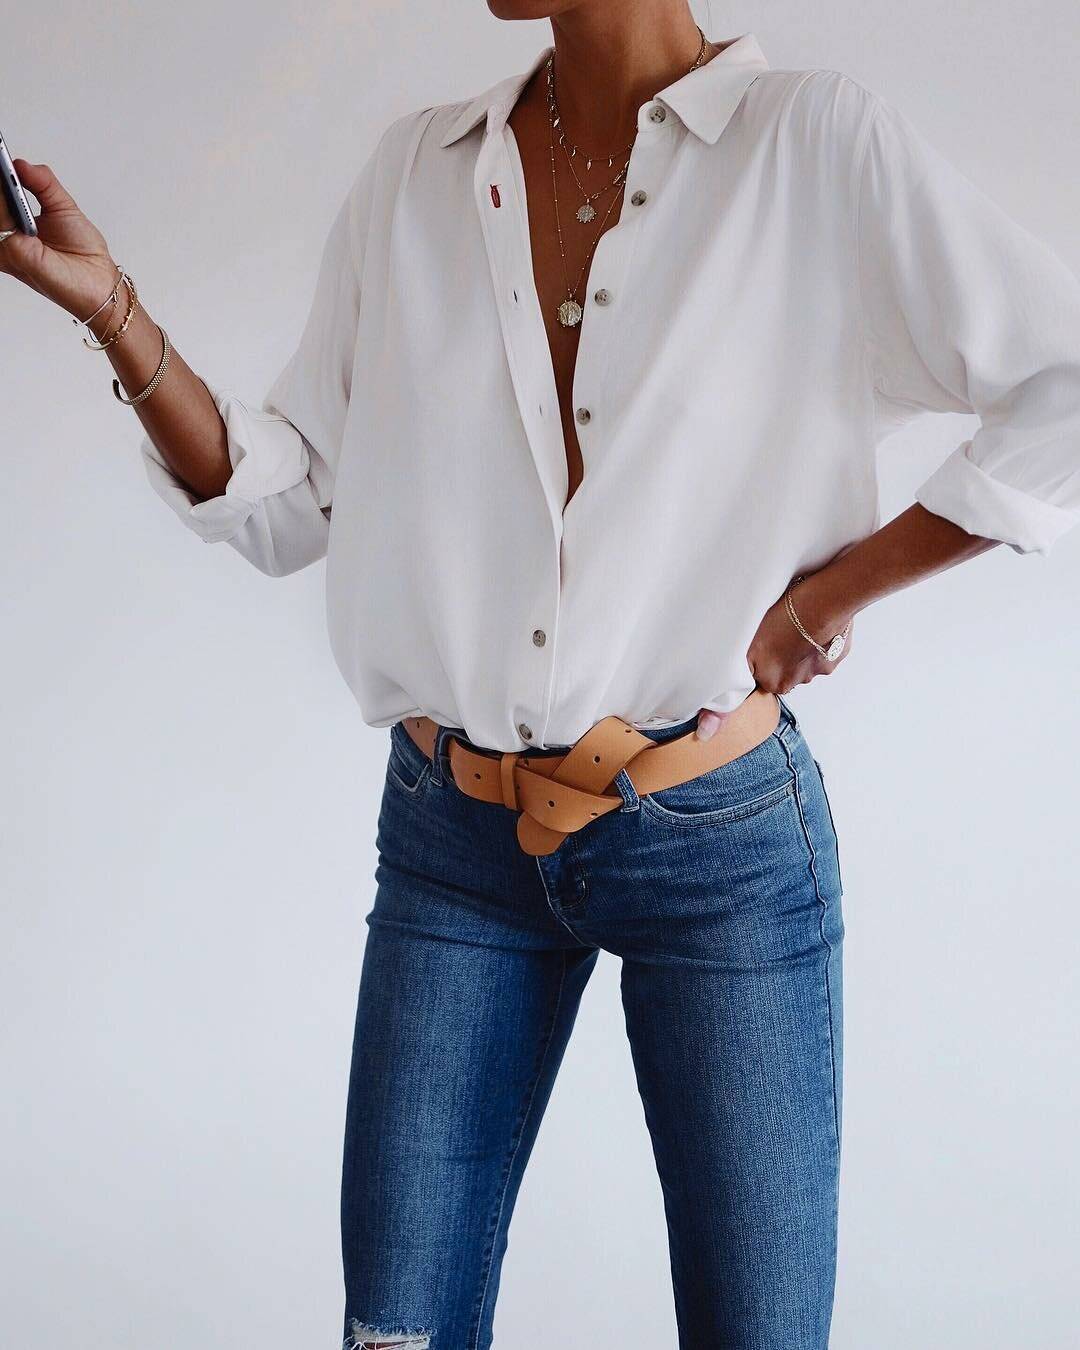 Как носить рубашку с джинсами: даем модные советы девушкам